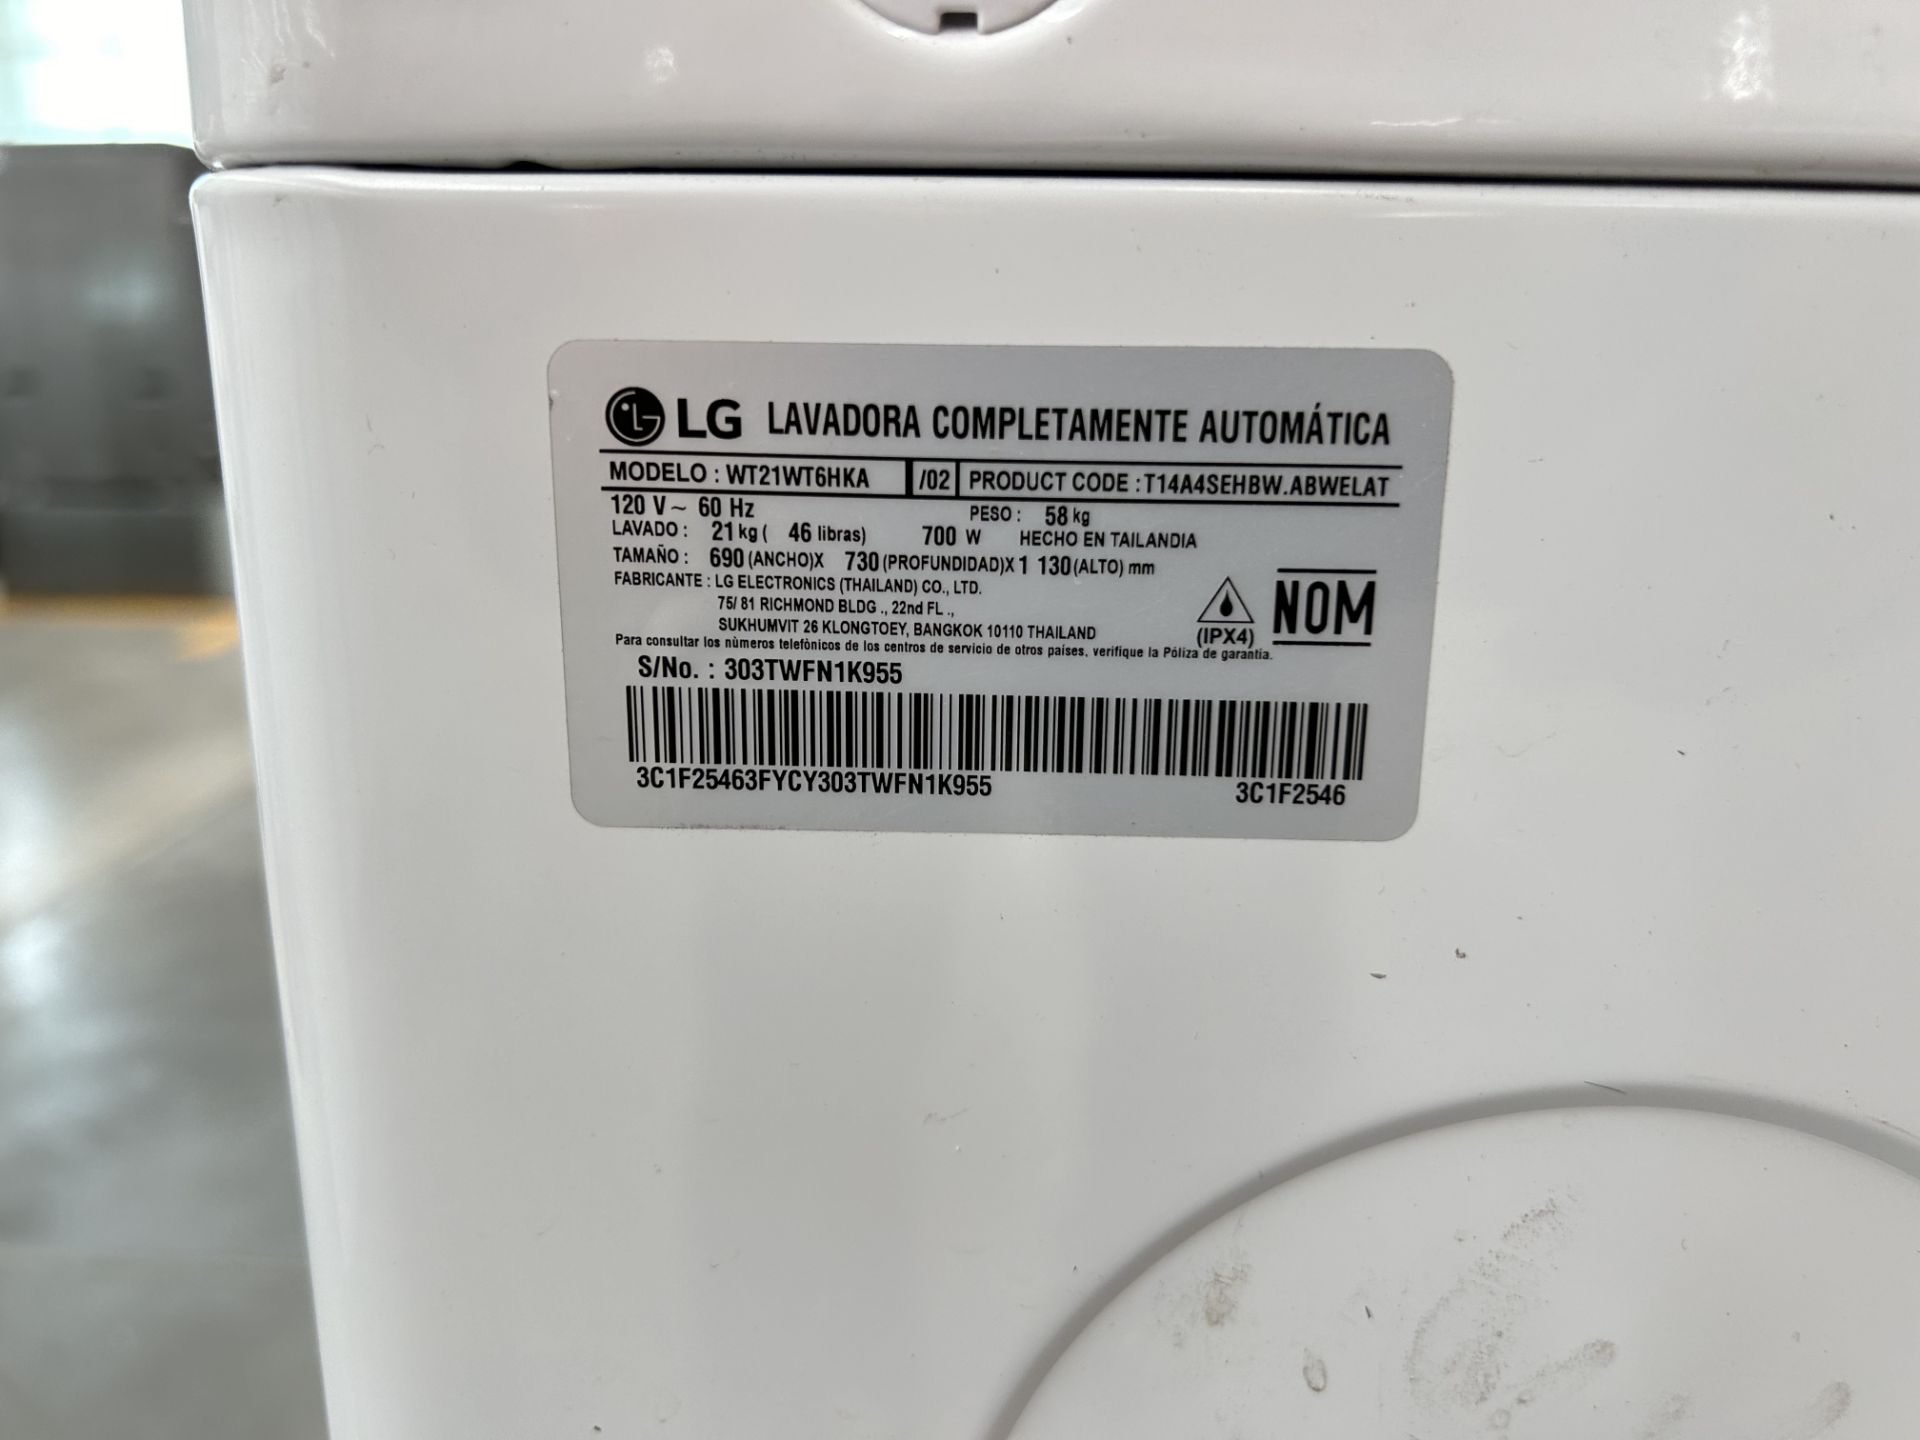 Lavadora de 21 Kg Marca LG, Modelo WT21WT6HKA, Serie N1K955, Color BLANCO (Equipo de devolución) - Image 6 of 8